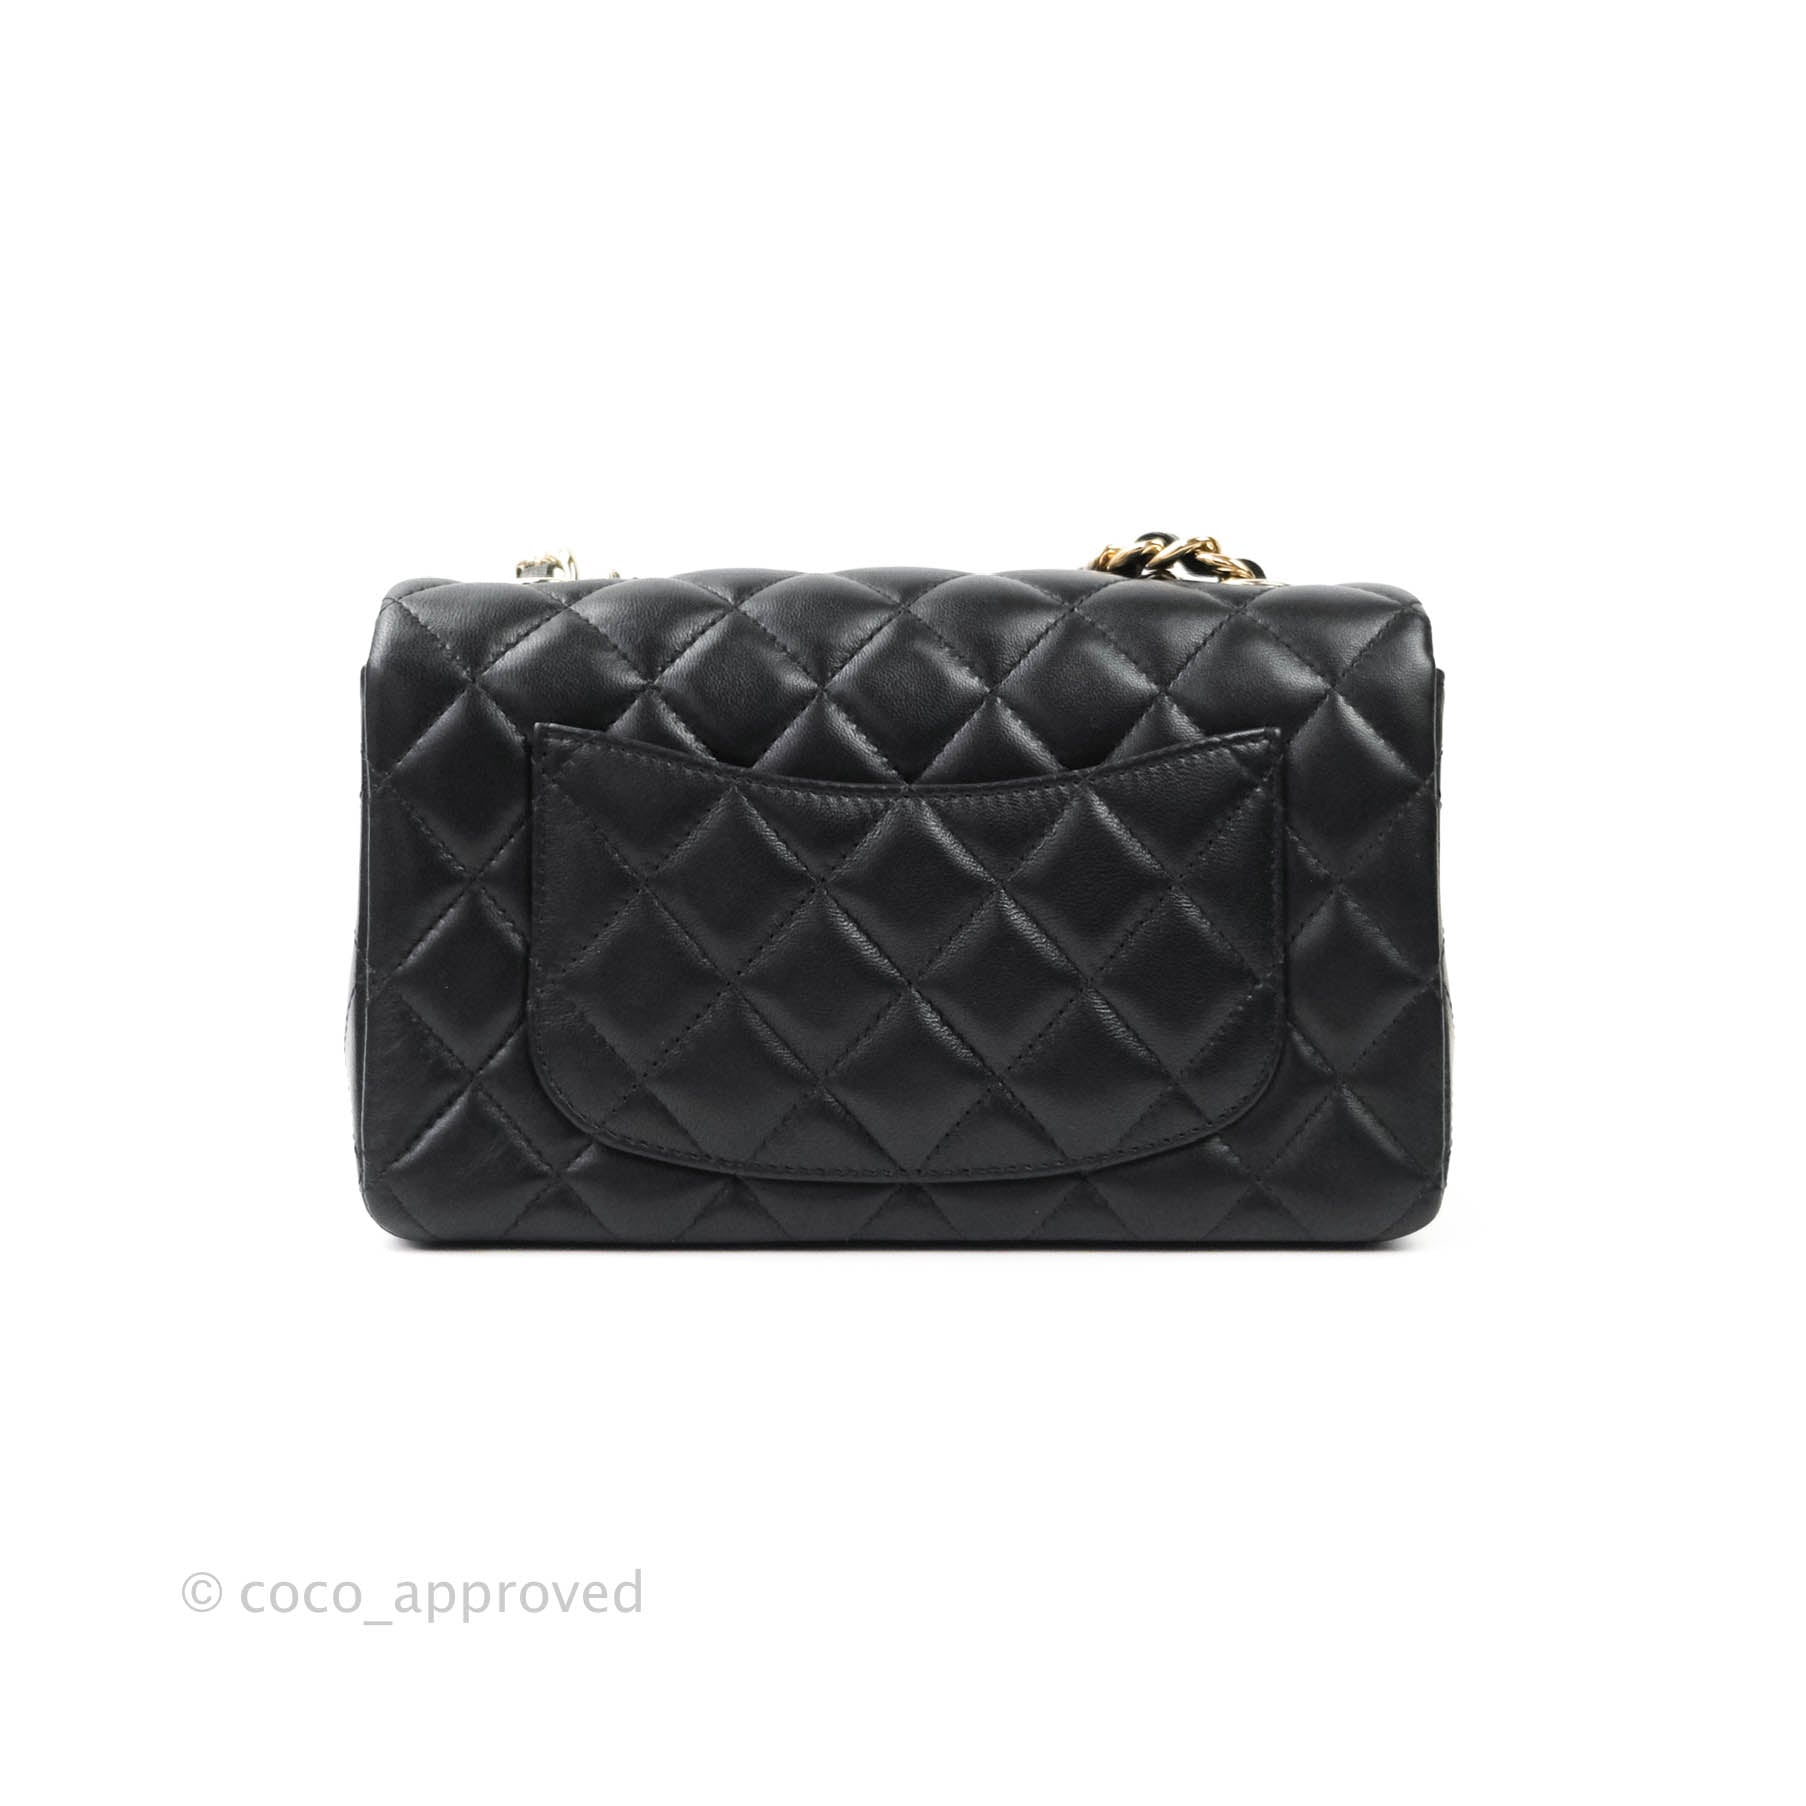 Chanel Micro Bag Charm - Black Mini Bags, Handbags - CHA600967